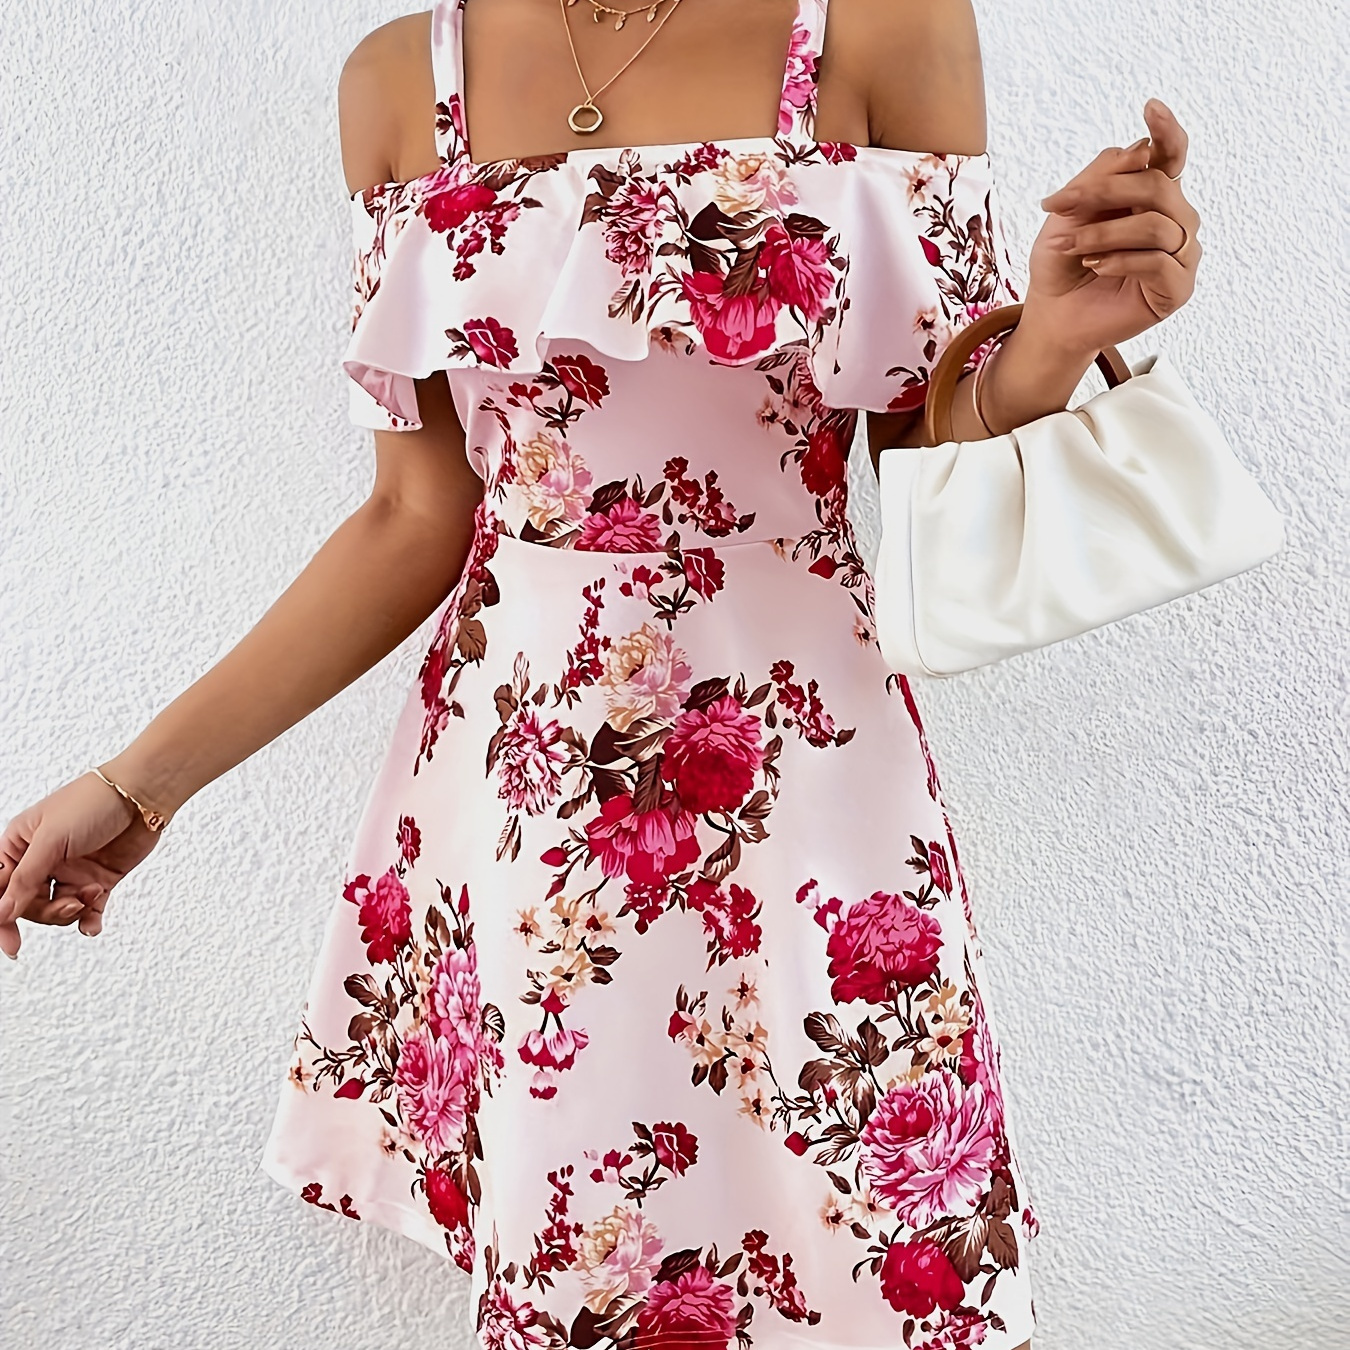 

Floral Print Cold Shoulder Dress, Elegant Ruffle Dress For Spring & Summer, Women's Clothing